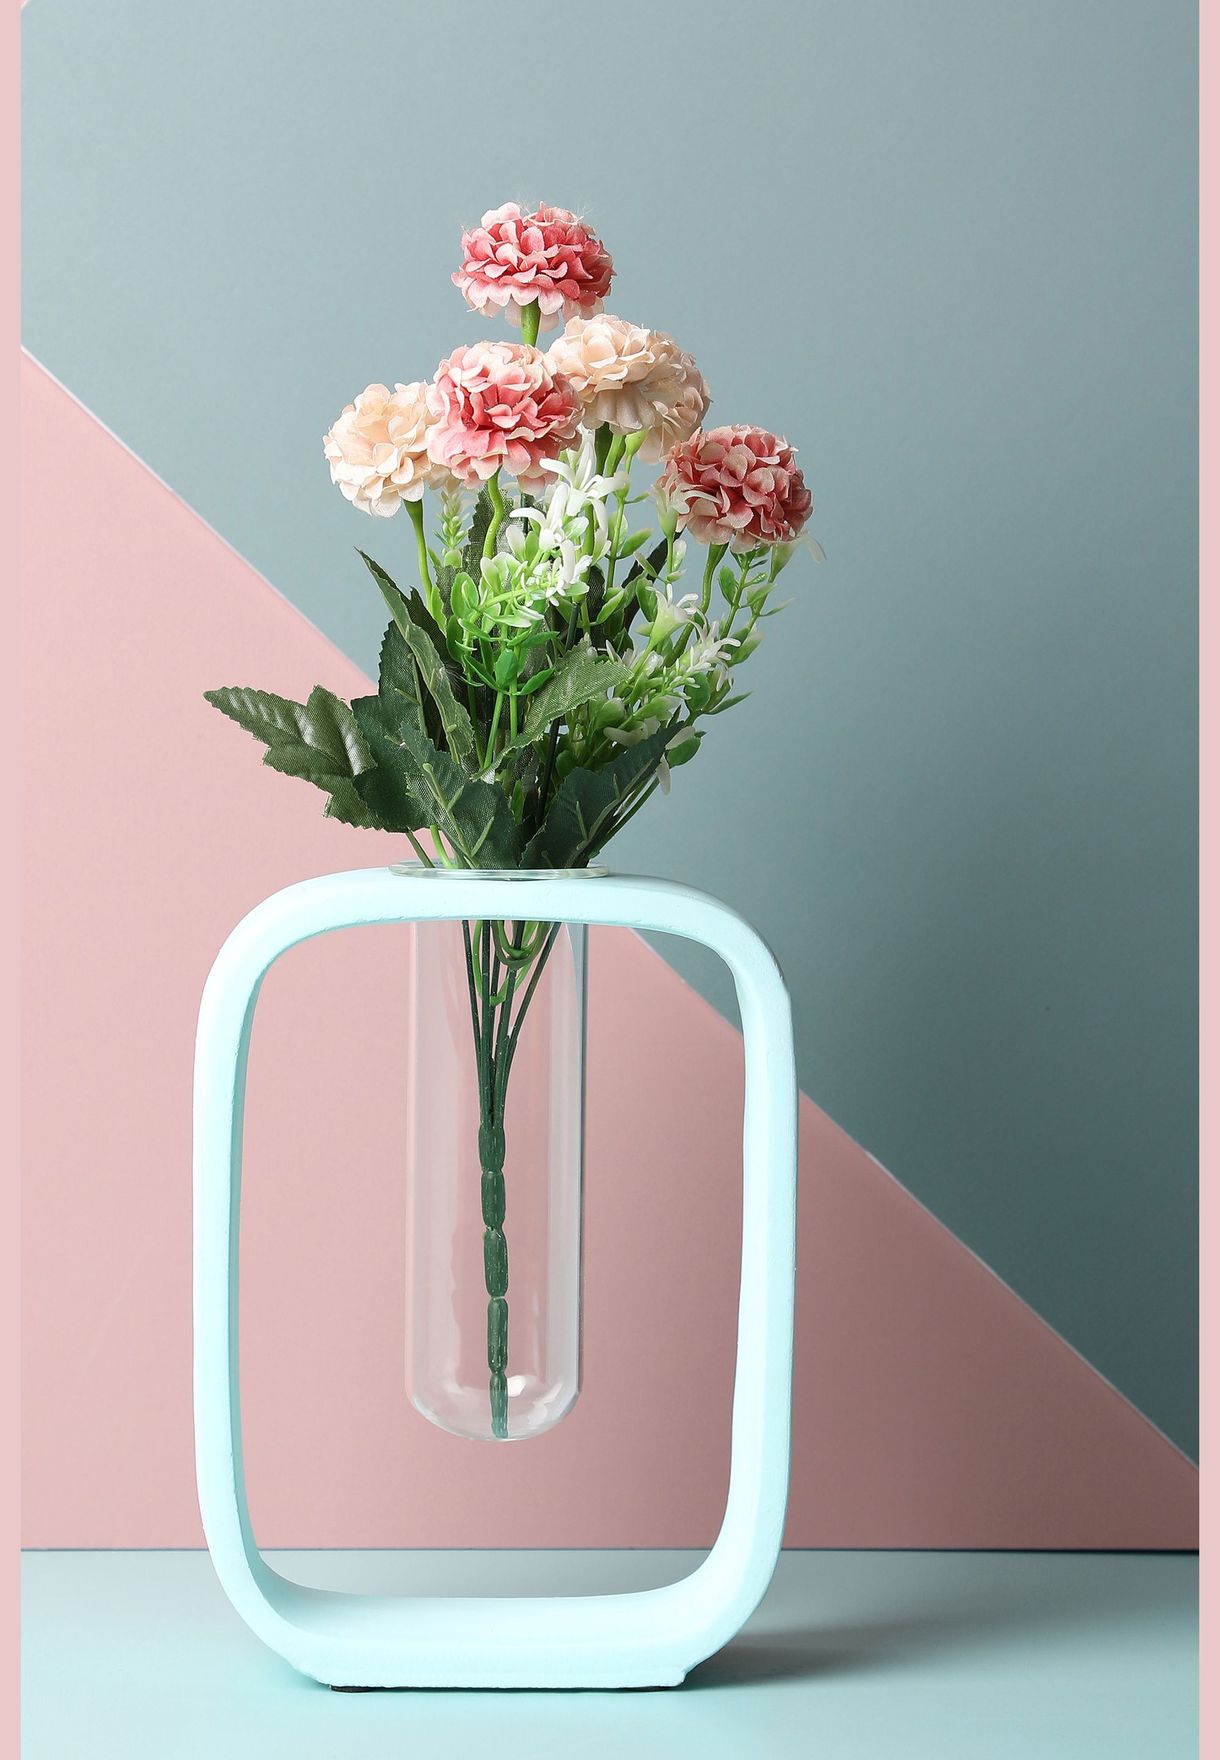 Sqaure Shaped Modern Glass Test Tube Ceramic Flower Vase For Home Decor 